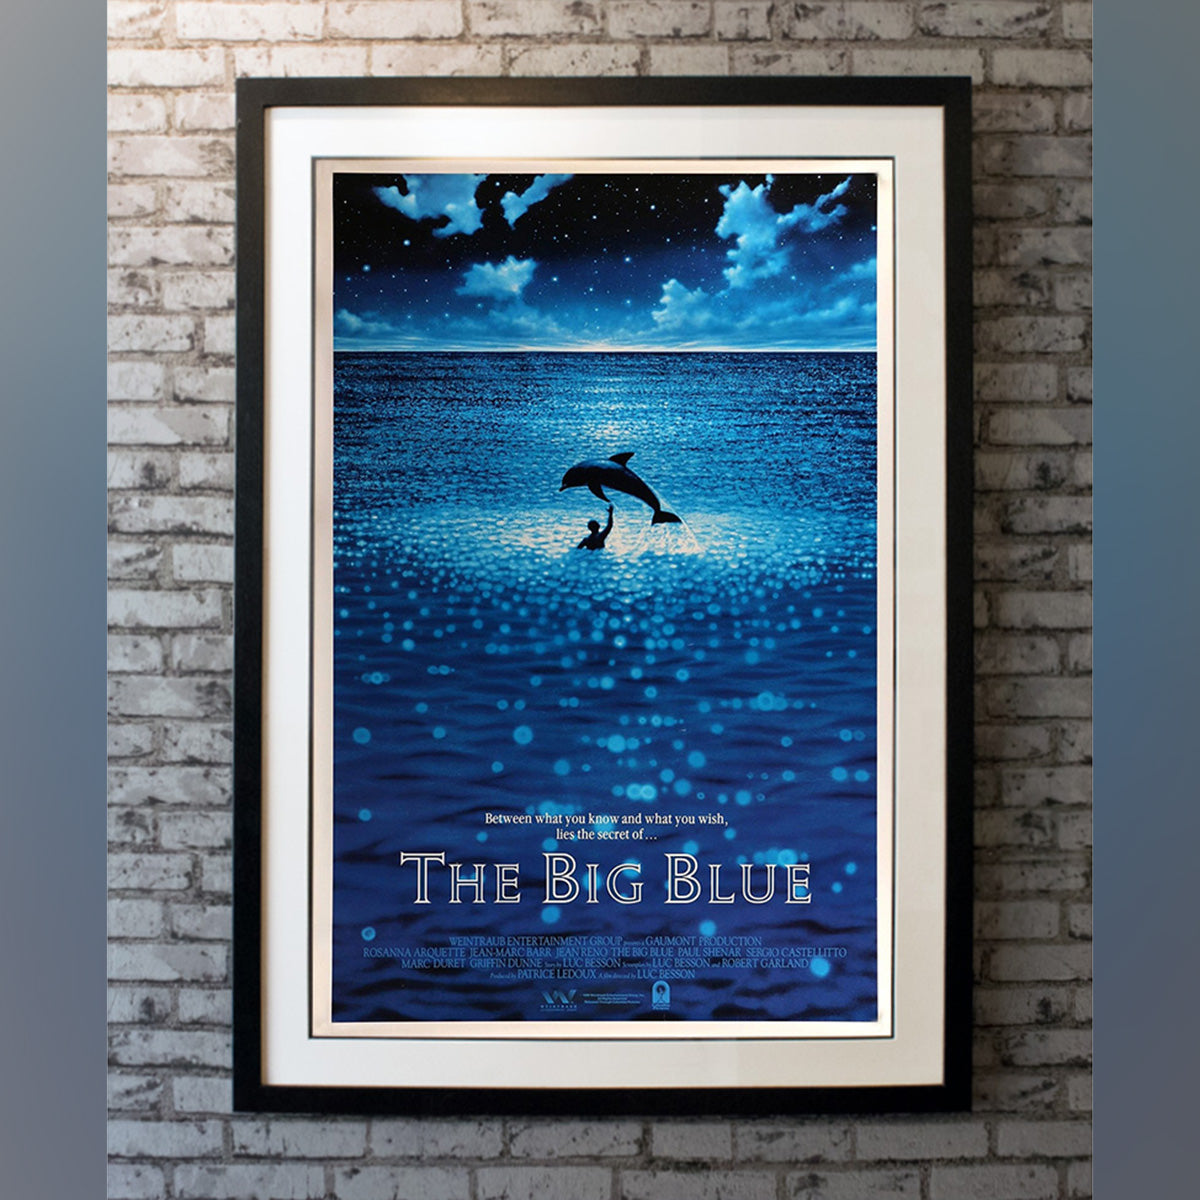 Original Movie Poster of Big Blue, The (1988)